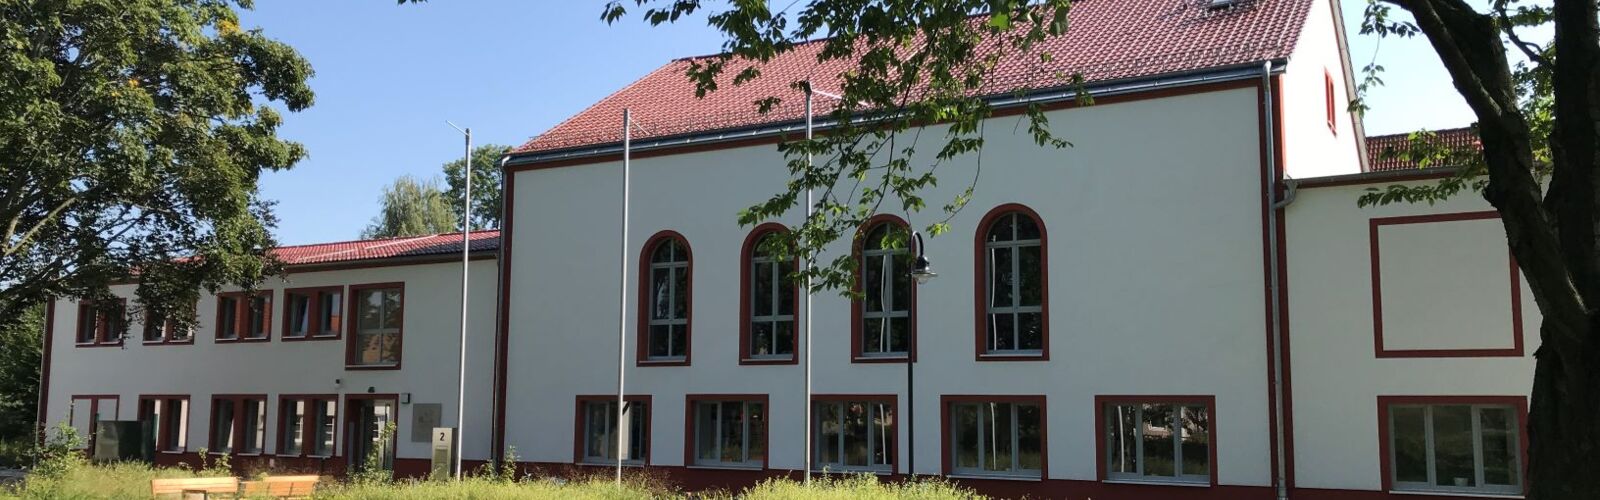 Verwaltungsgebäude der Gemeinde Wachau, Teichstraße 2